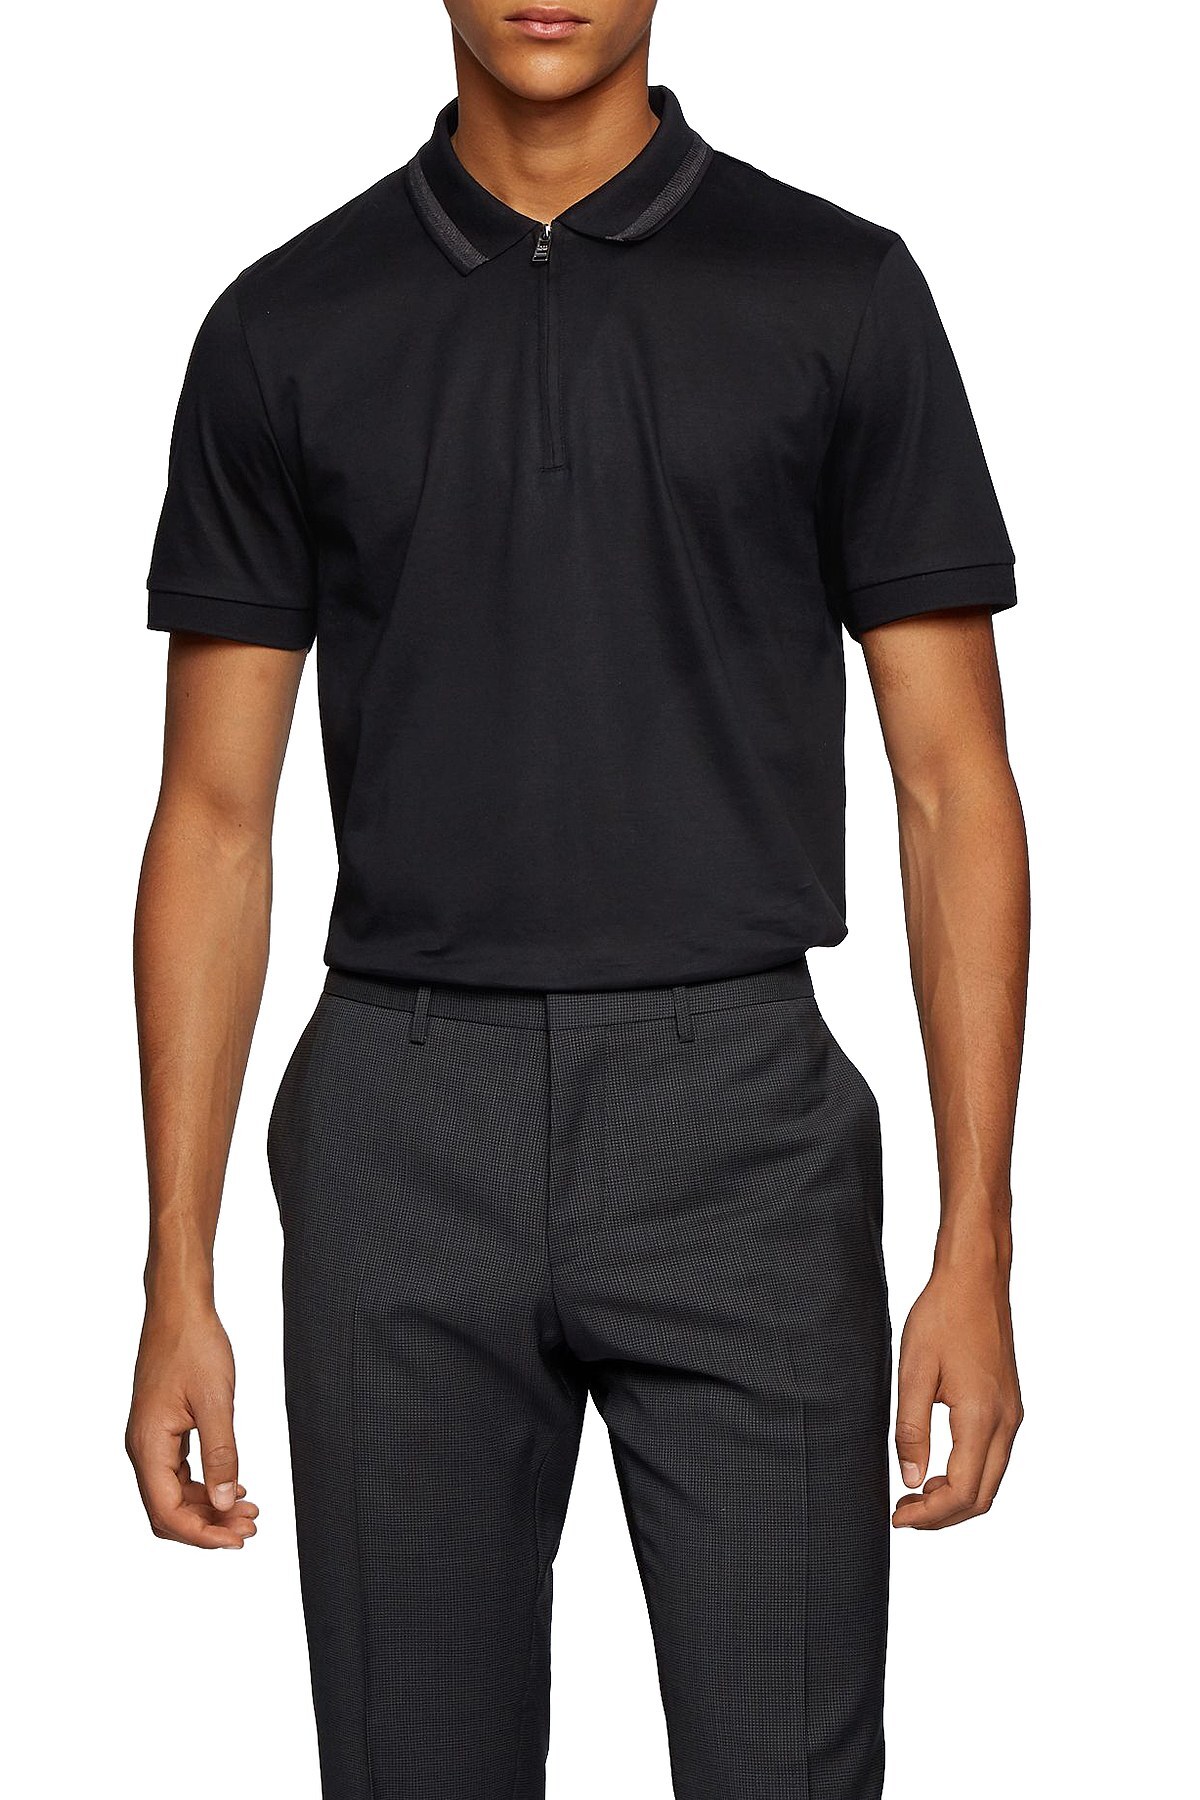 Hugo Boss Pamuklu Slim Fit Fermuarlı T Shirt Erkek Polo 50441792 001 SİYAH